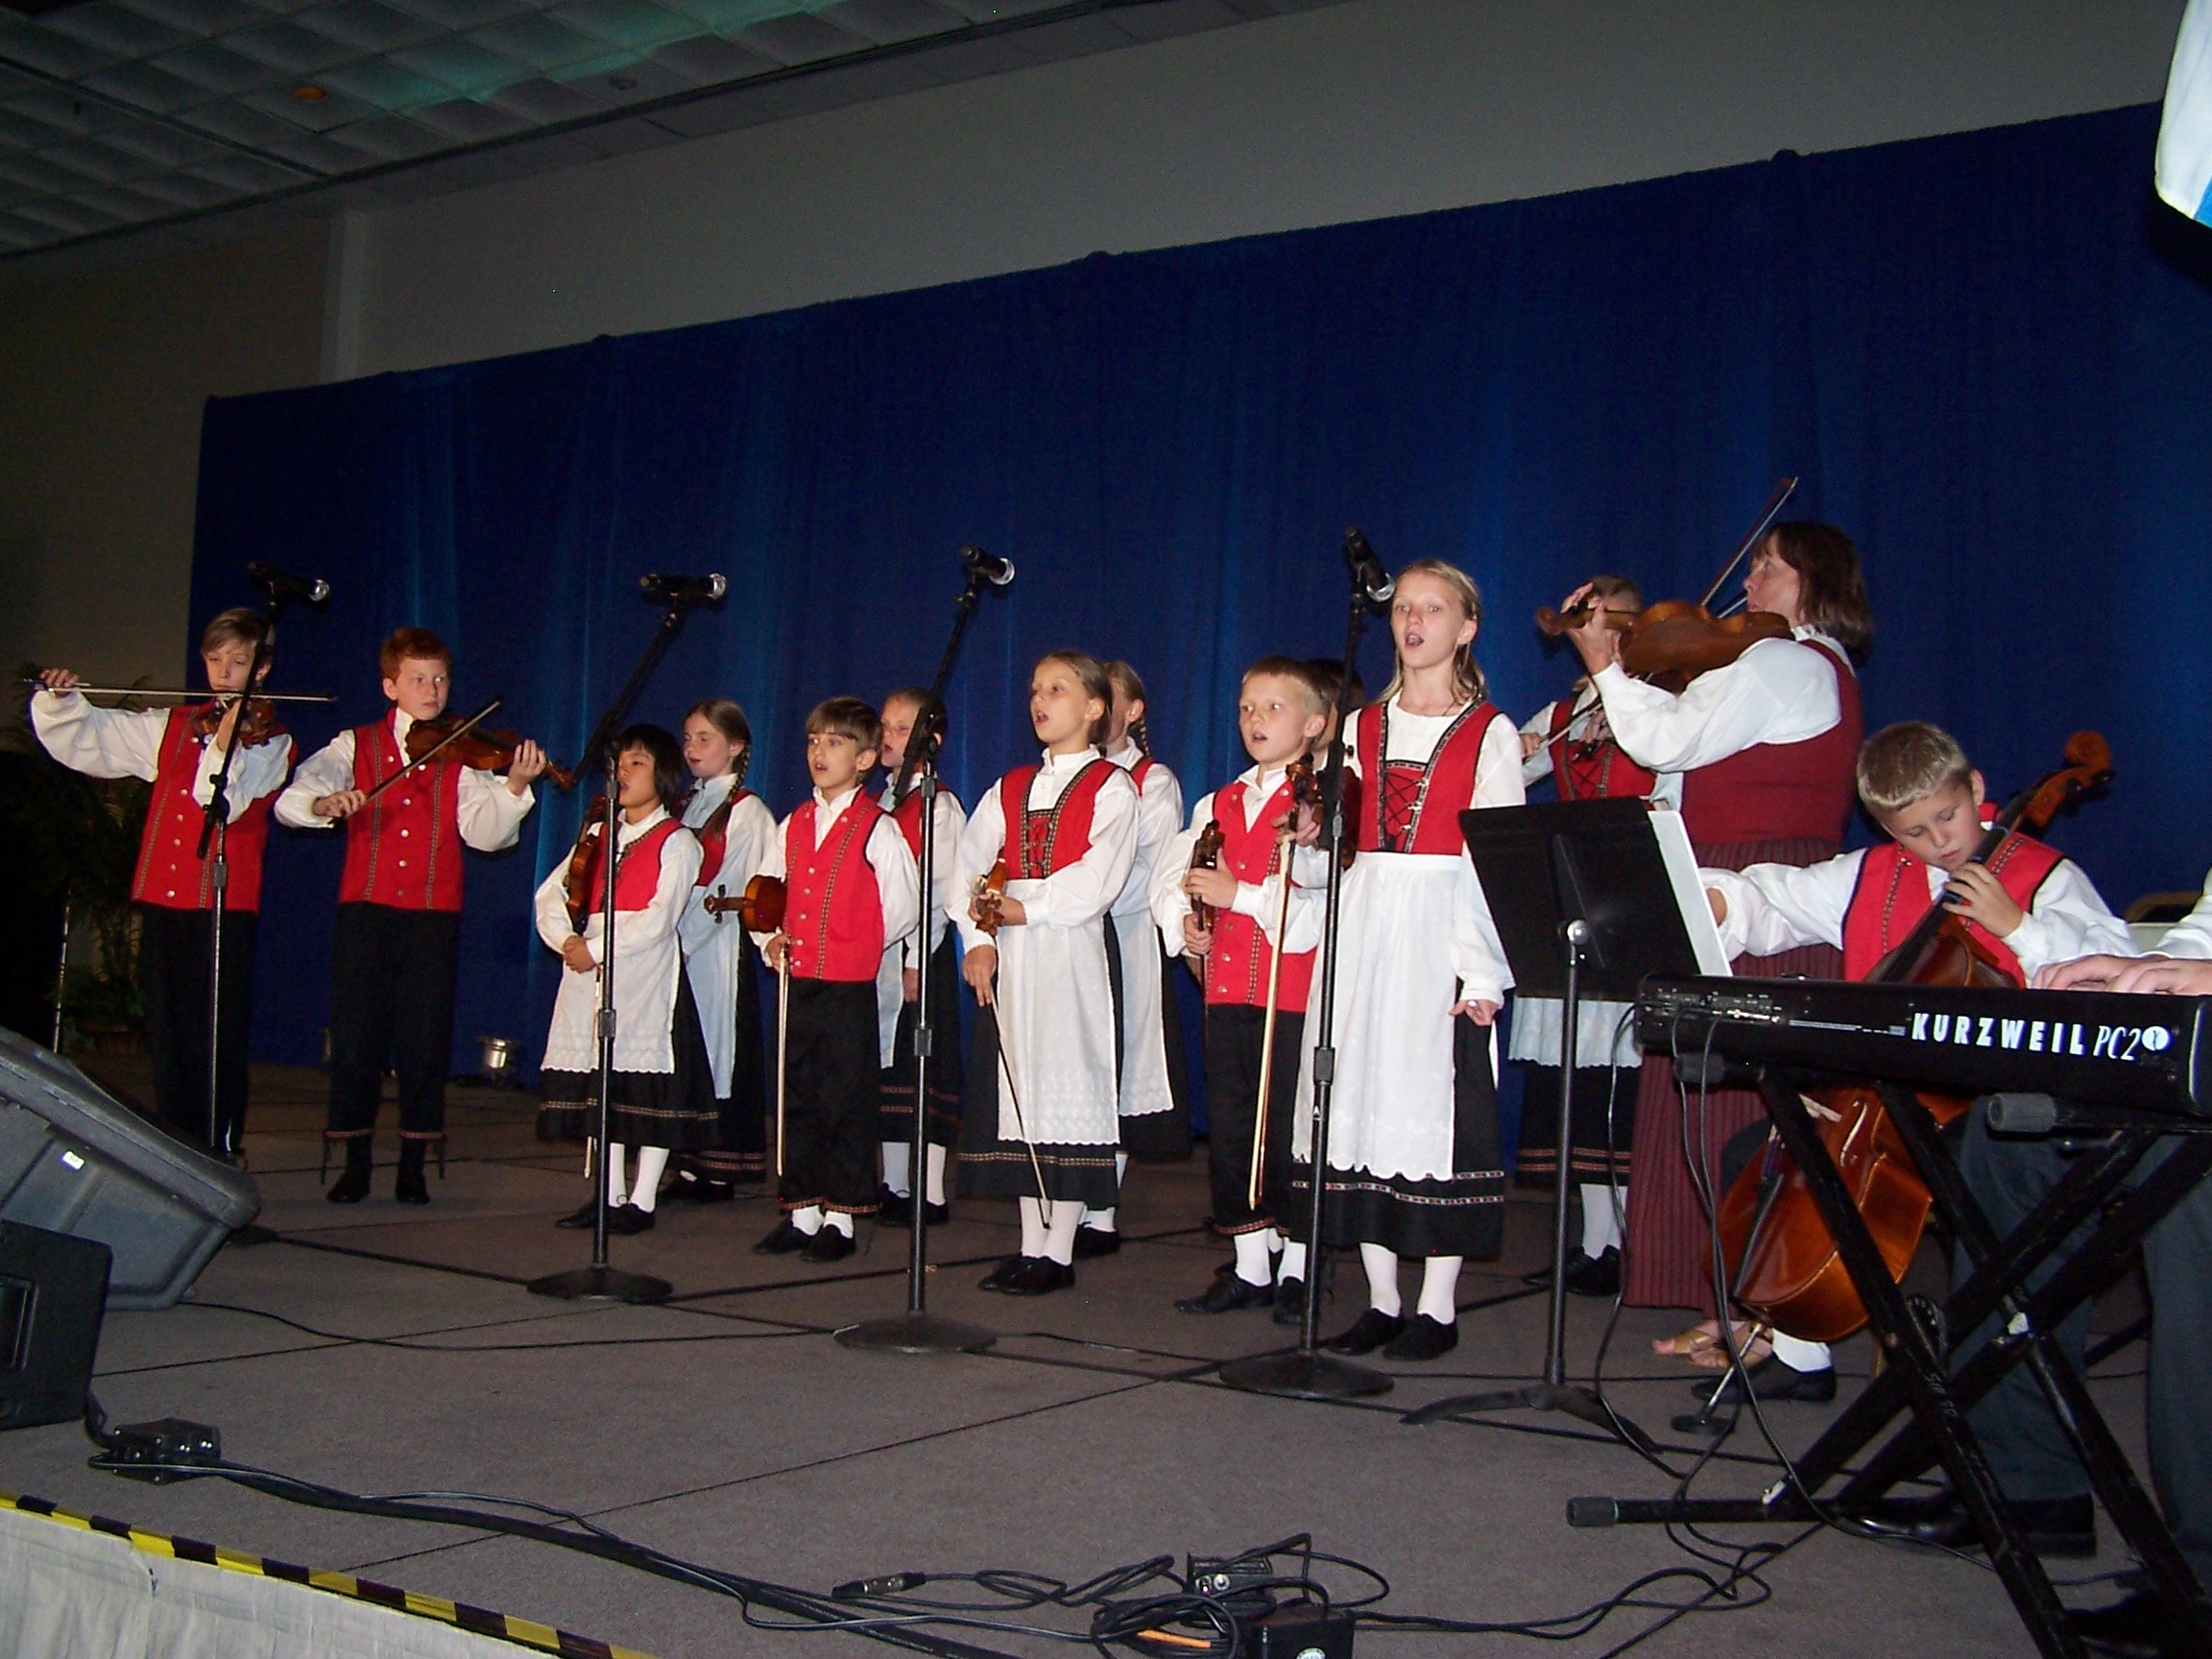 San Diegon FinnFest 2011-juhlassa esiintynyt minnesotalainen "Singing Strings"-nuoriso-orkesteri on erinomainen esimerkki suomalaiskulttuurin jatkumisesta seuraaville sukupolville Yhdysvalloissa.